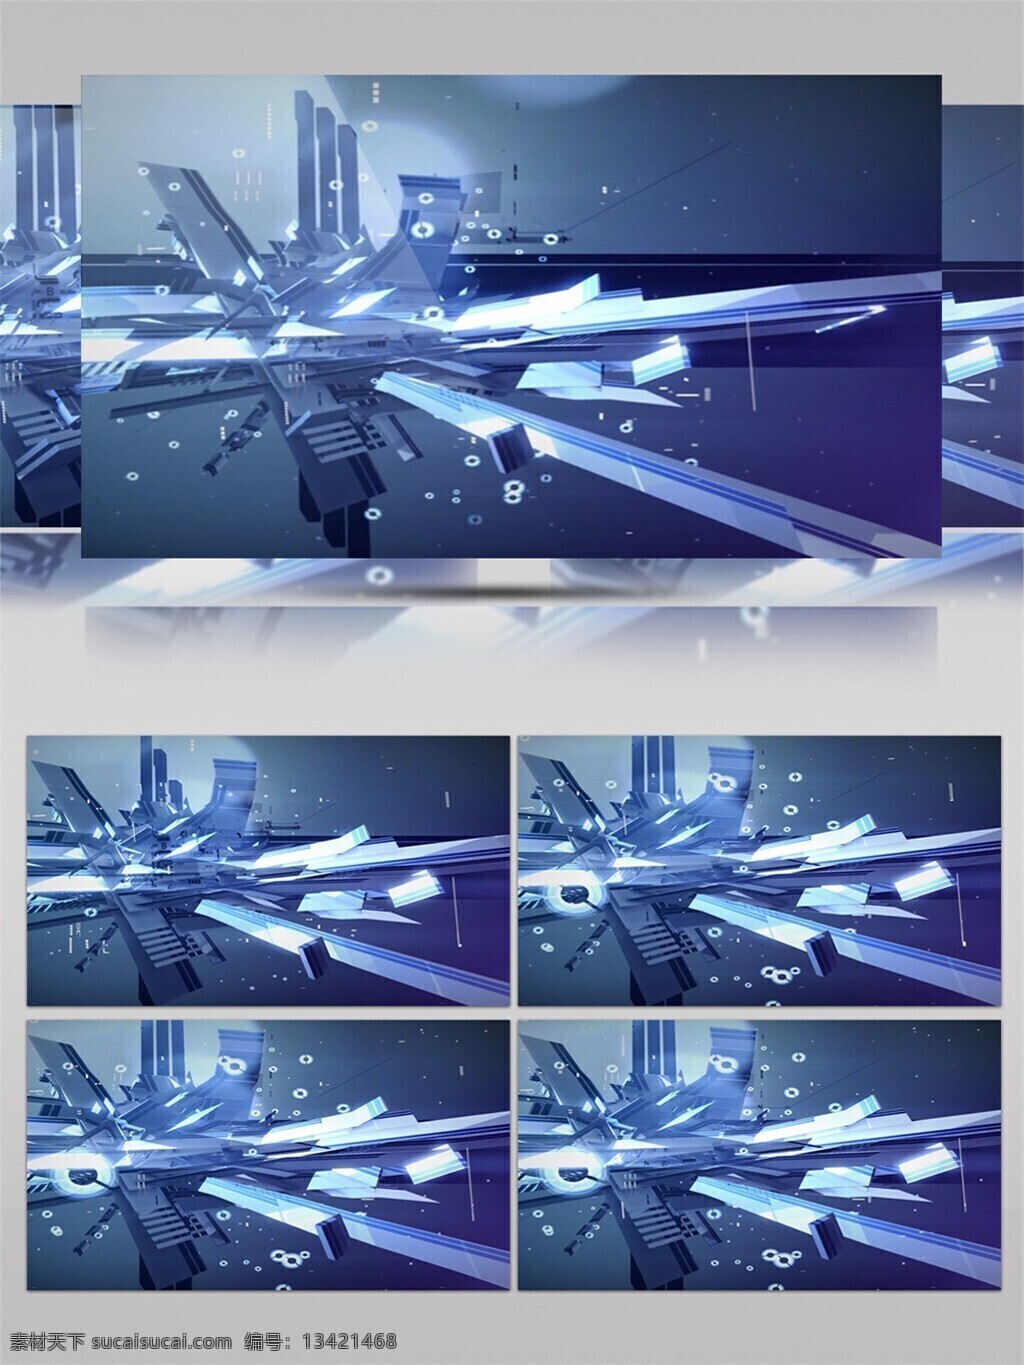 宇宙 冰雪 世界 视频 蓝色 唯美背景素材 舞台背景素材 led 闪烁 灯光